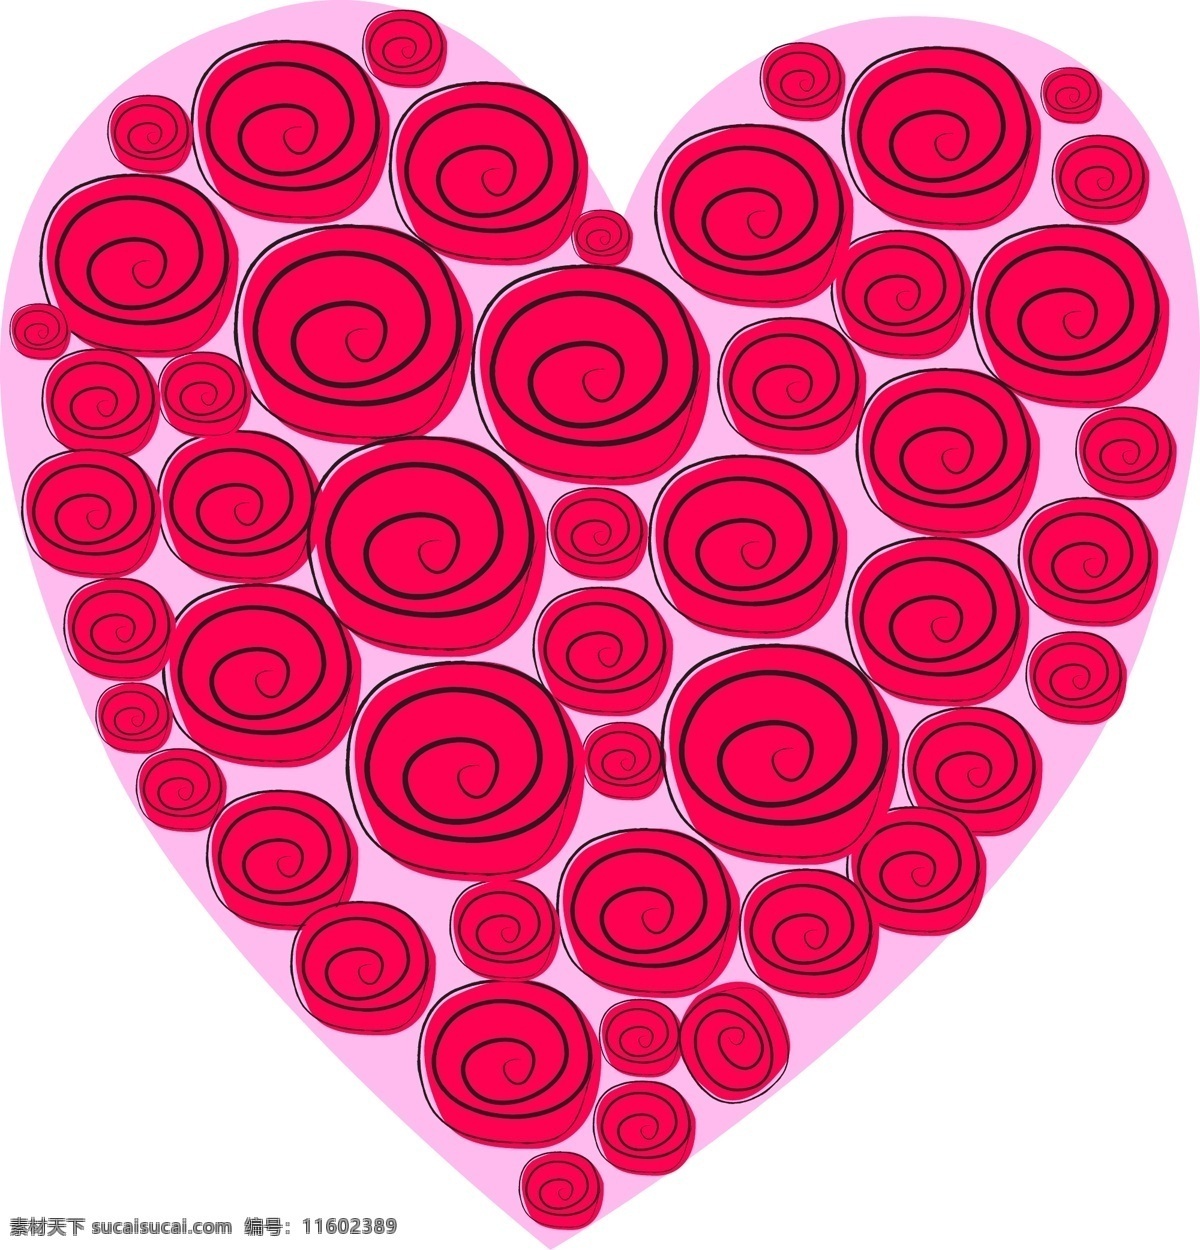 创意 玫瑰 爱心 爱心素材 玫瑰花 手绘花卉 矢量素材 情人节